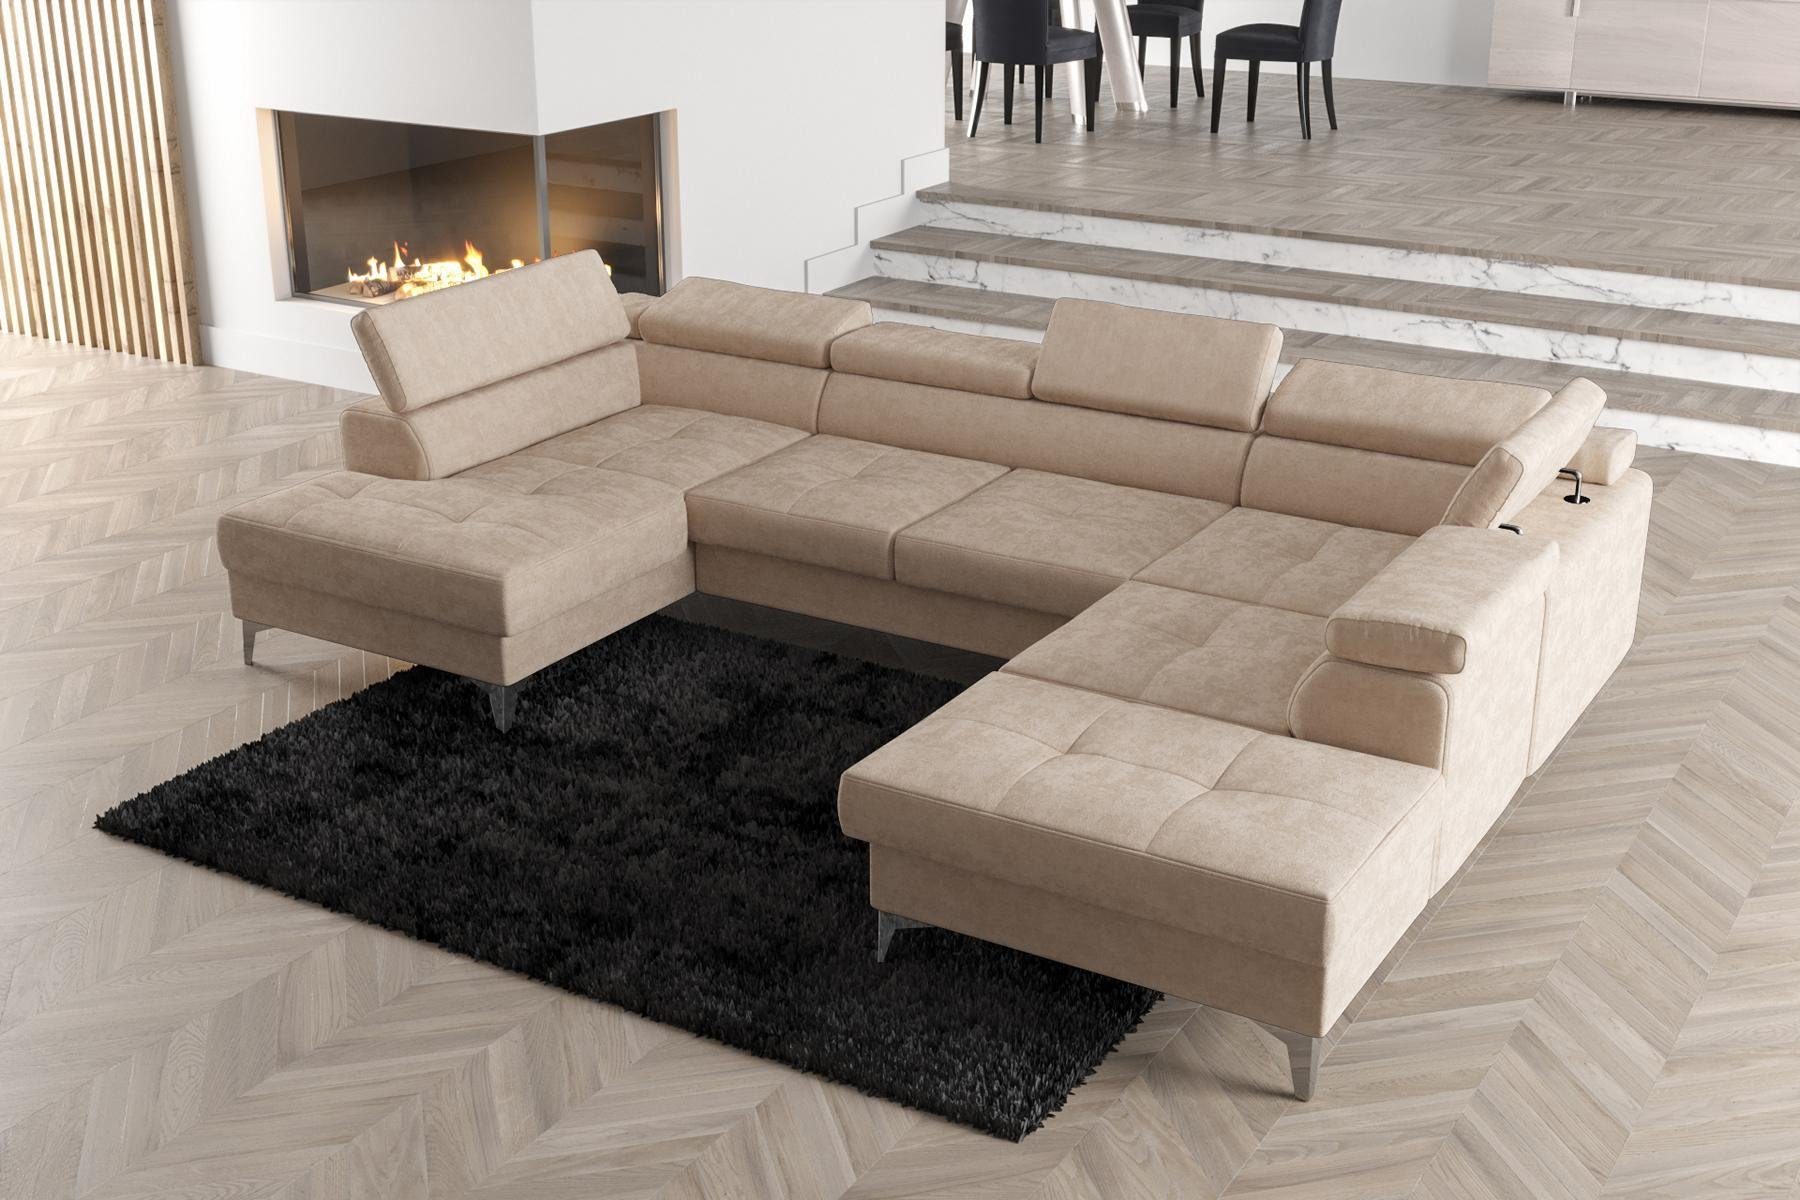 JVmoebel Ecksofa Modernes Design Polsterung Couch Wohnzimmer Ecksofa U-Form, Made in Europe Beige